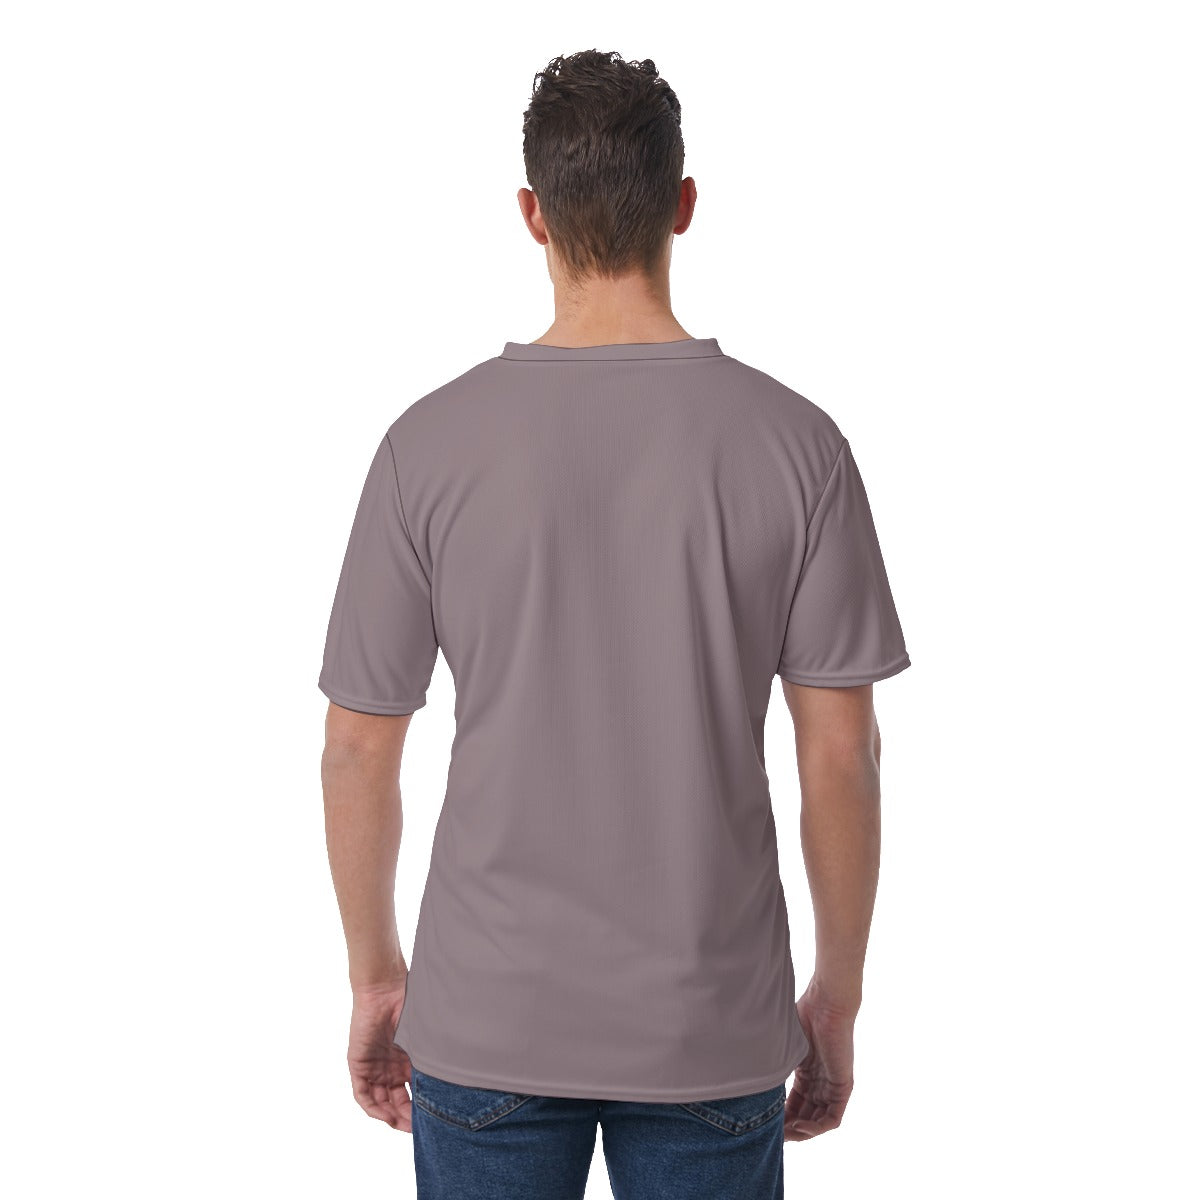 All-Over Print Men's V-Neck T-Shirt